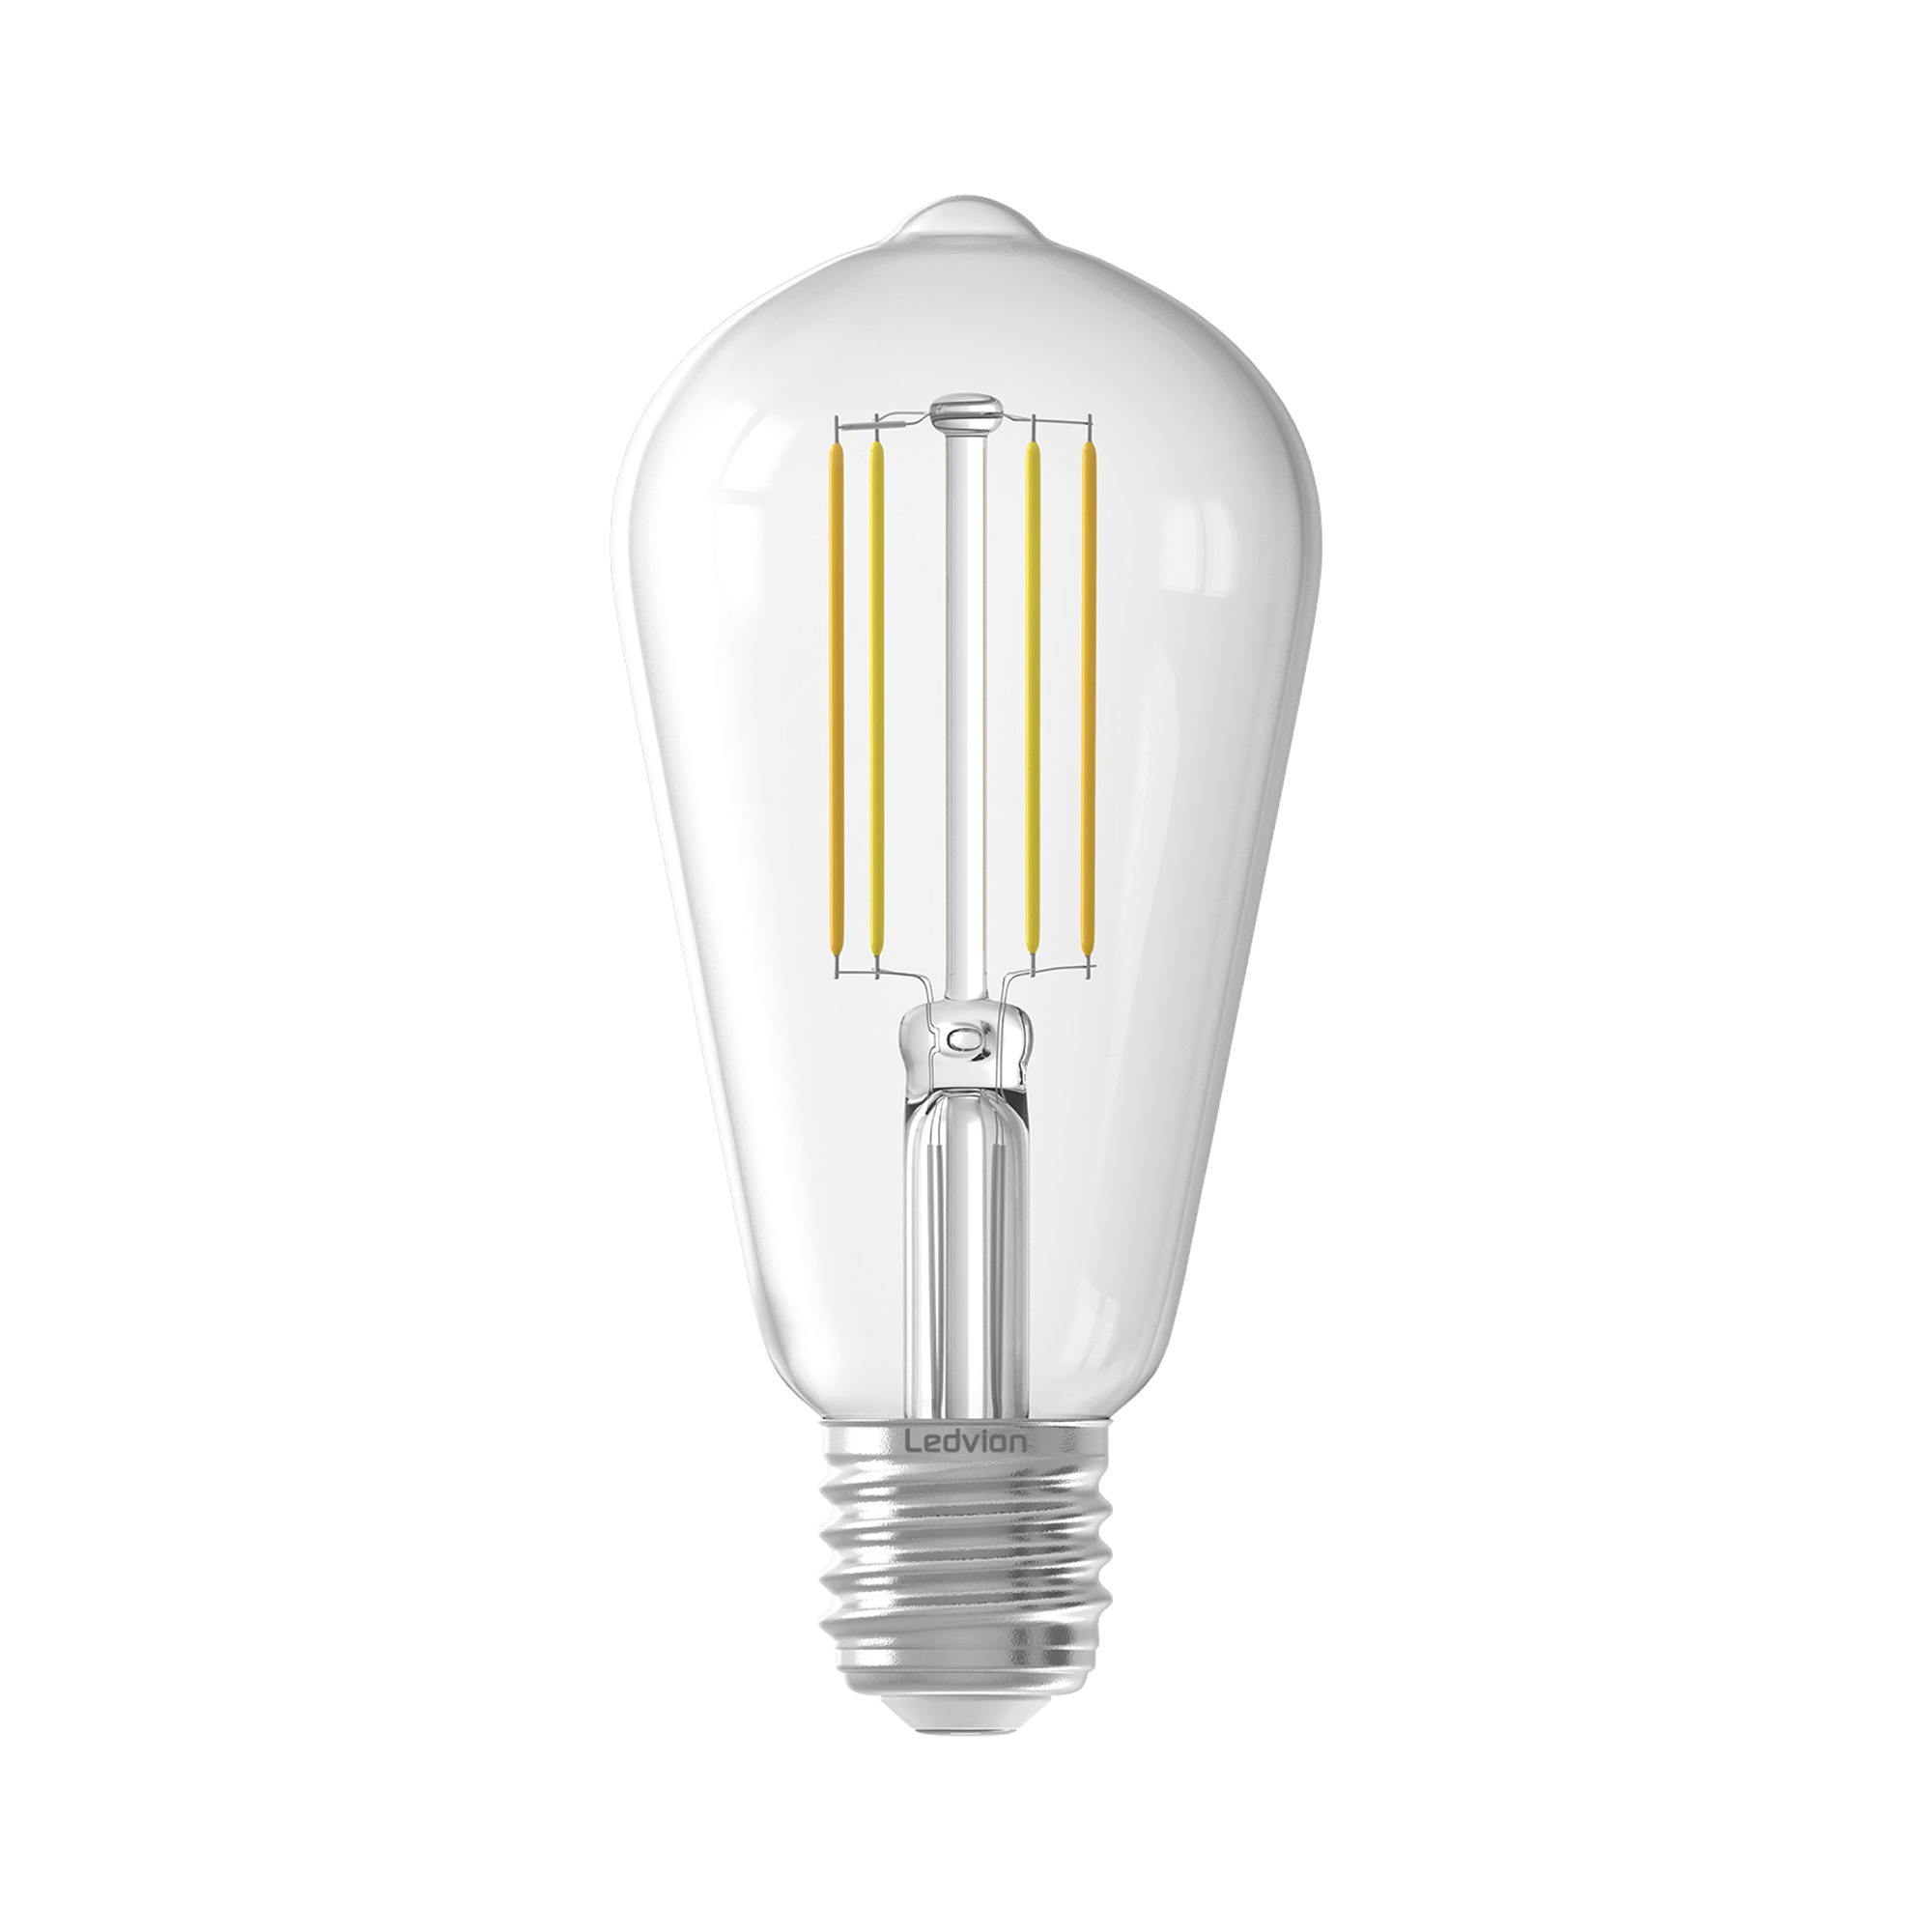 Ampoule LED Ledvion E27 - Dimmable - 4.5W - 2300K - 470 Lumen - Lampesonline